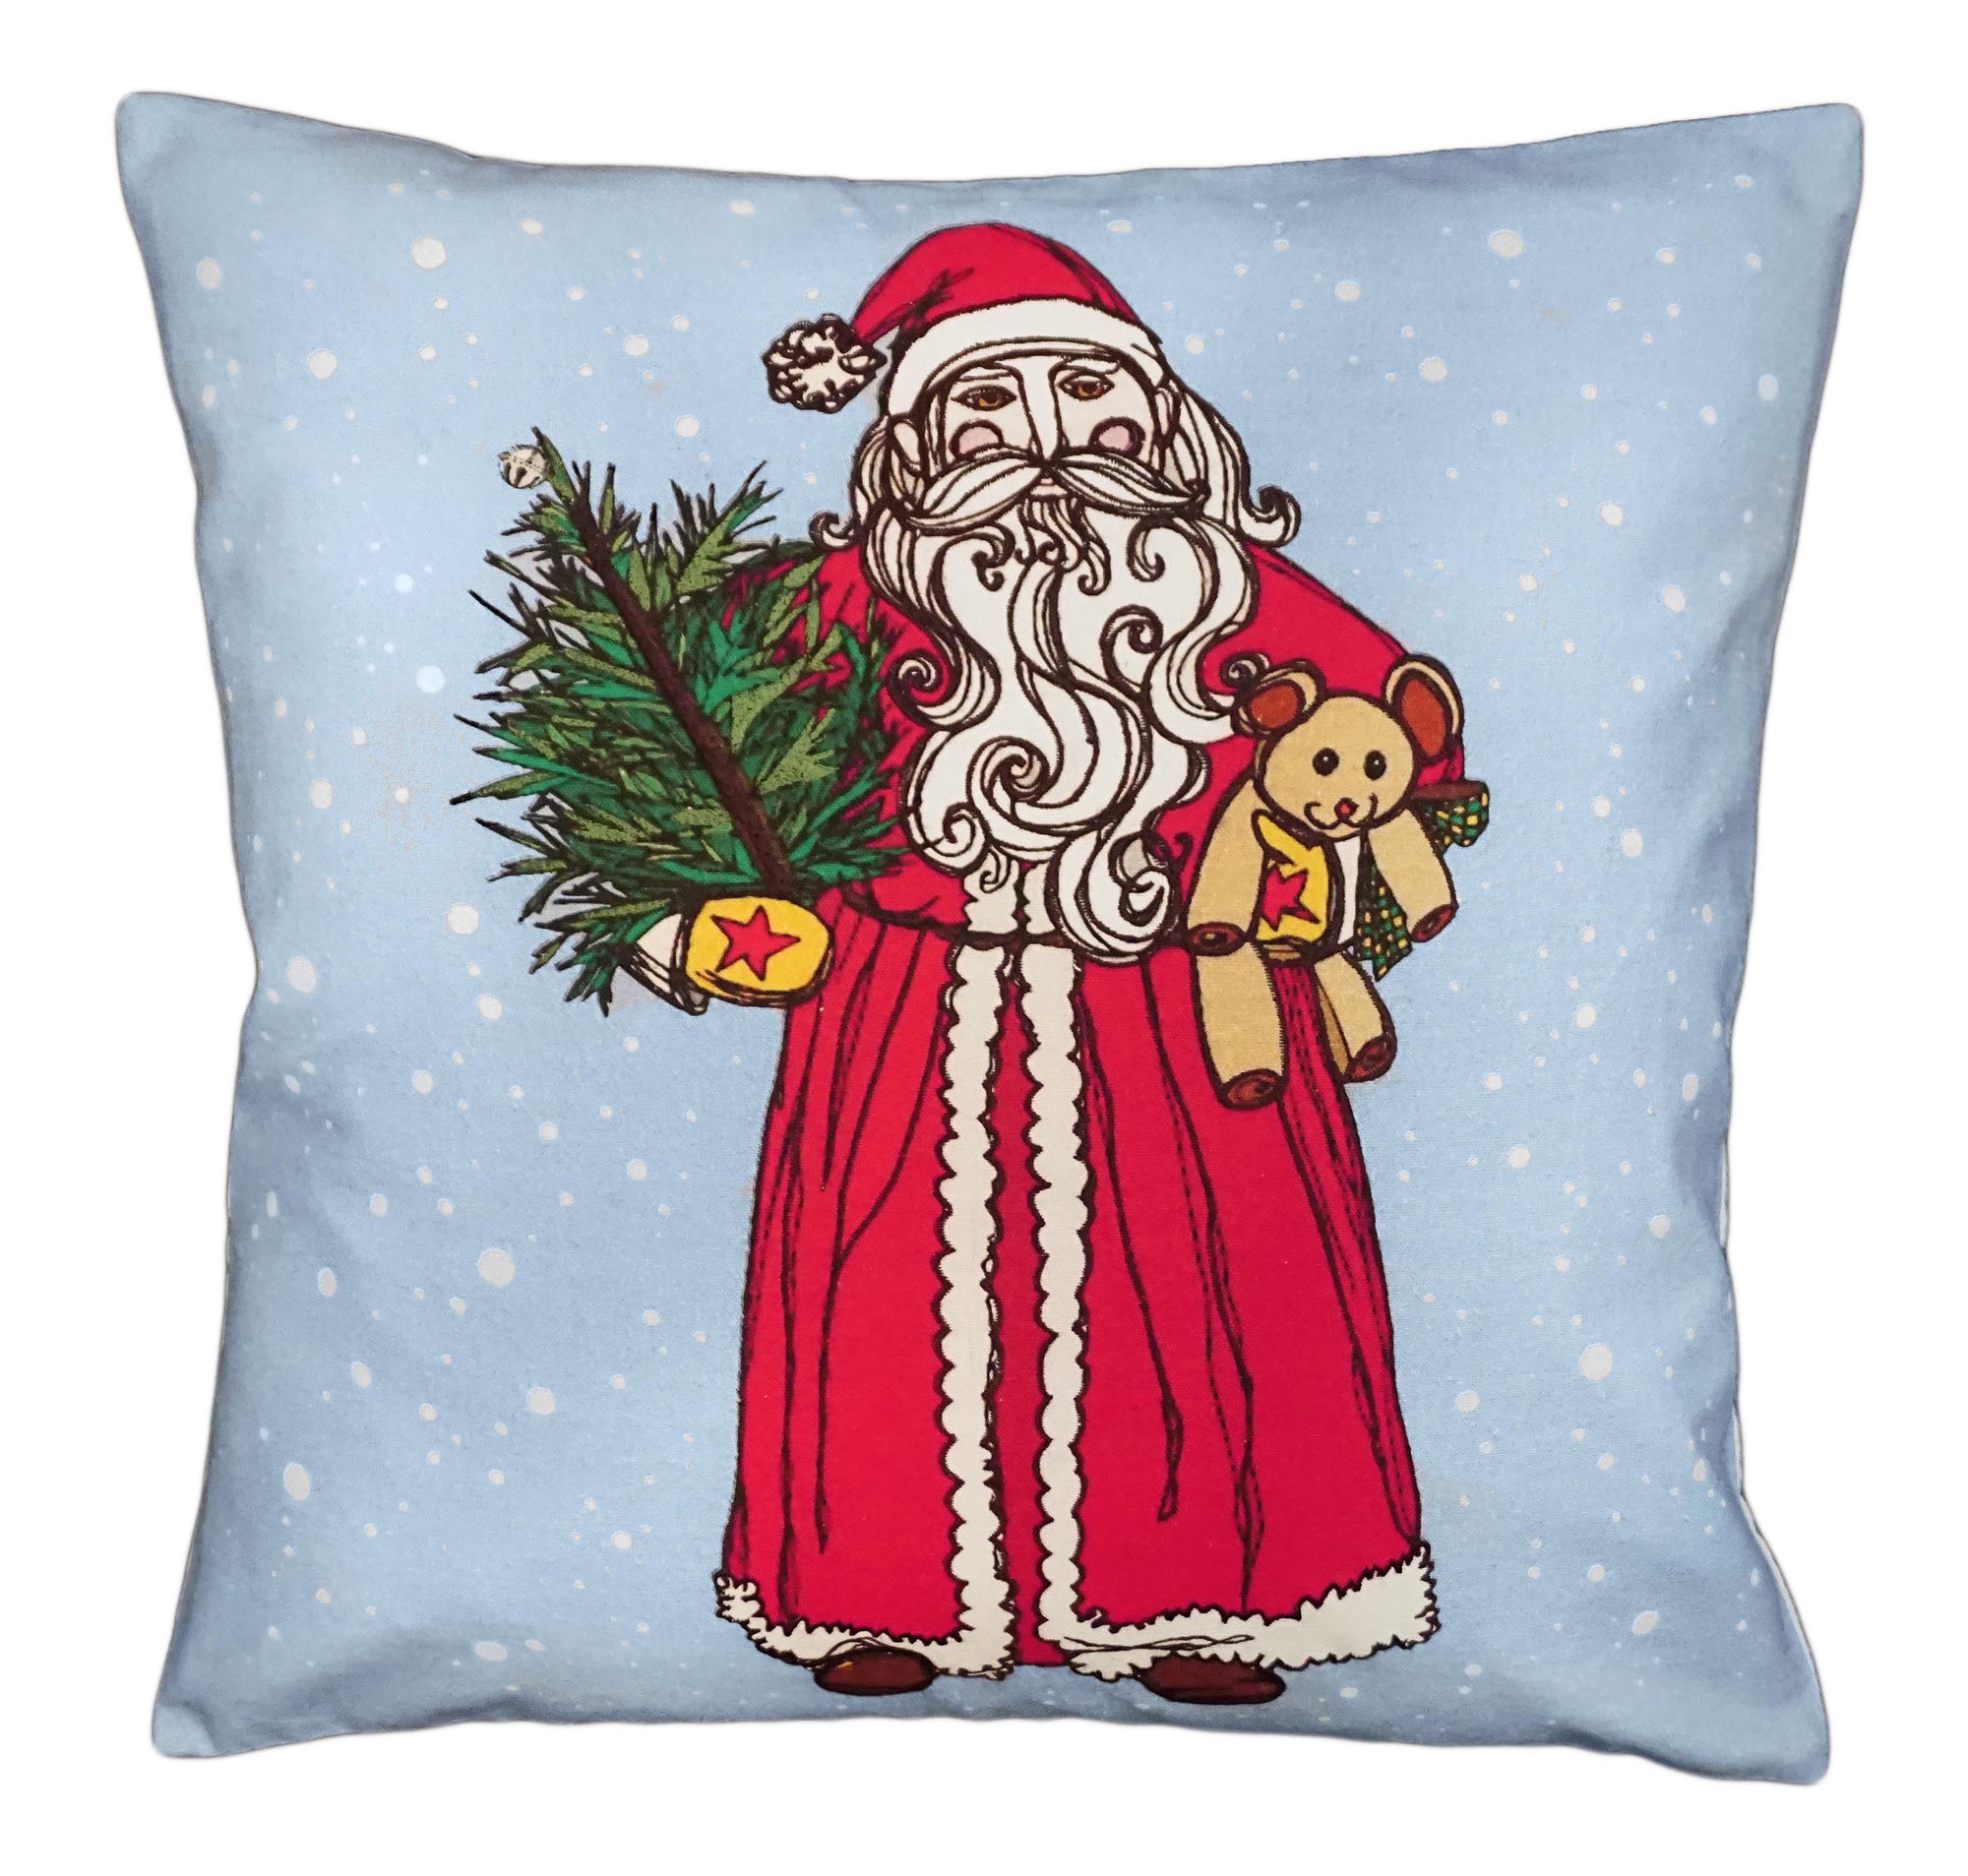 NPE-060 Vintage Santa Decorative Pillow